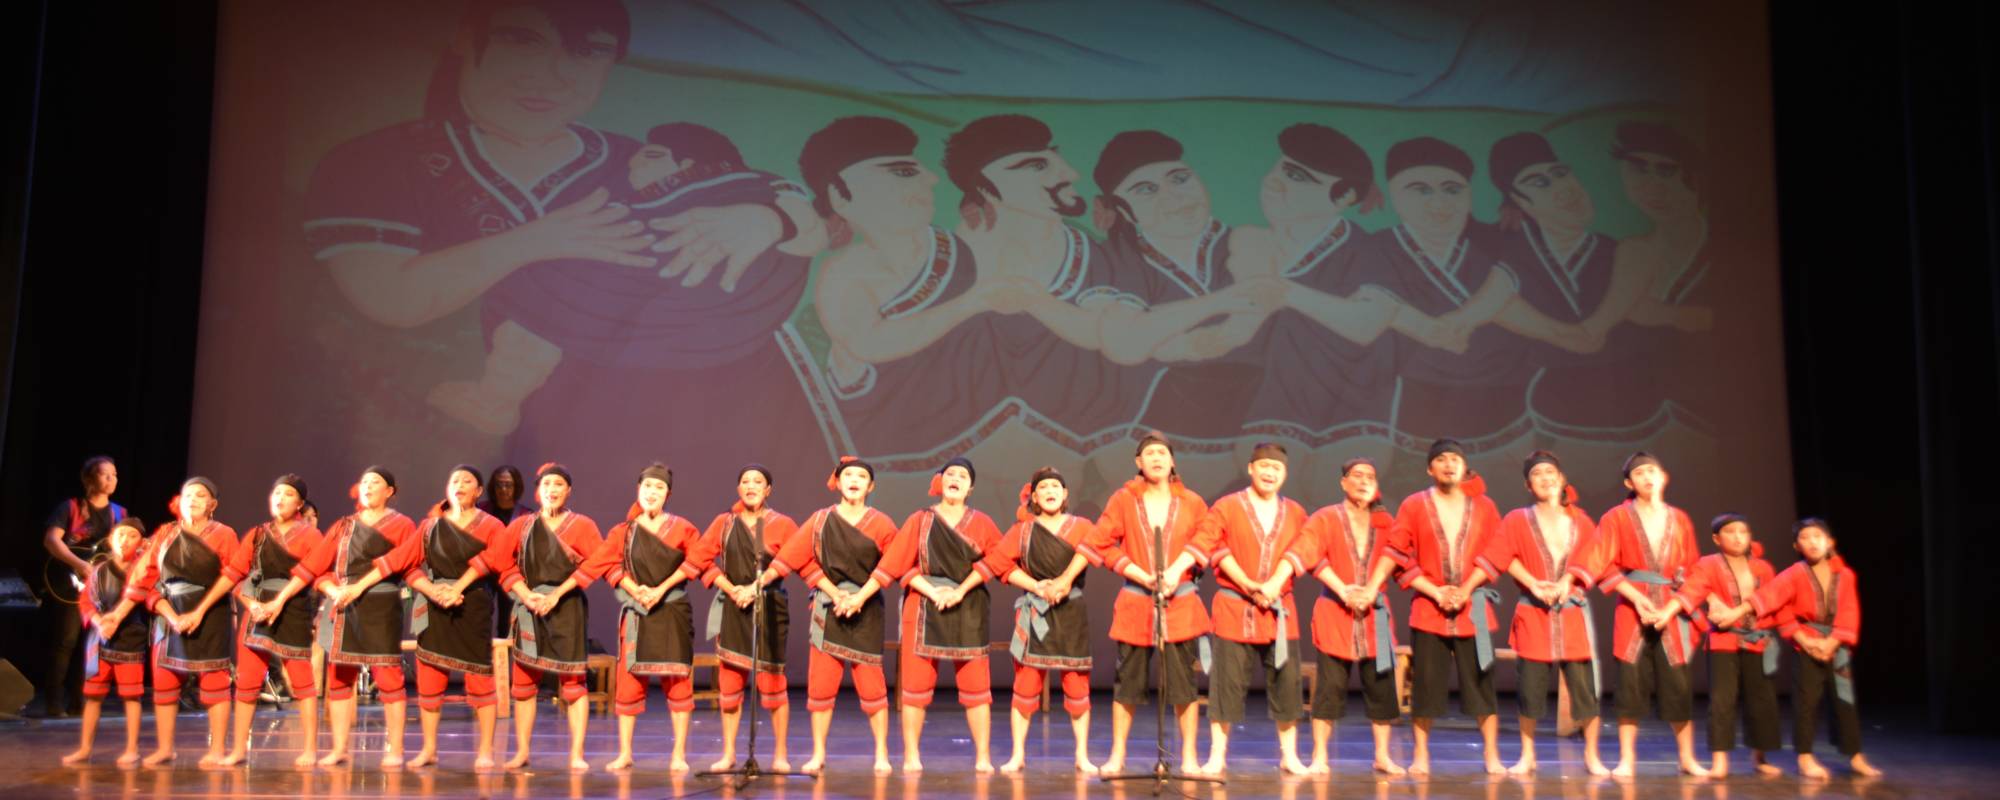 回家跳舞 莫拉克十周年小林村巡演走過這些日子 從未忘記回家的路 最新節目 衛武營國家藝術文化中心weiwuying National Kaohsiung